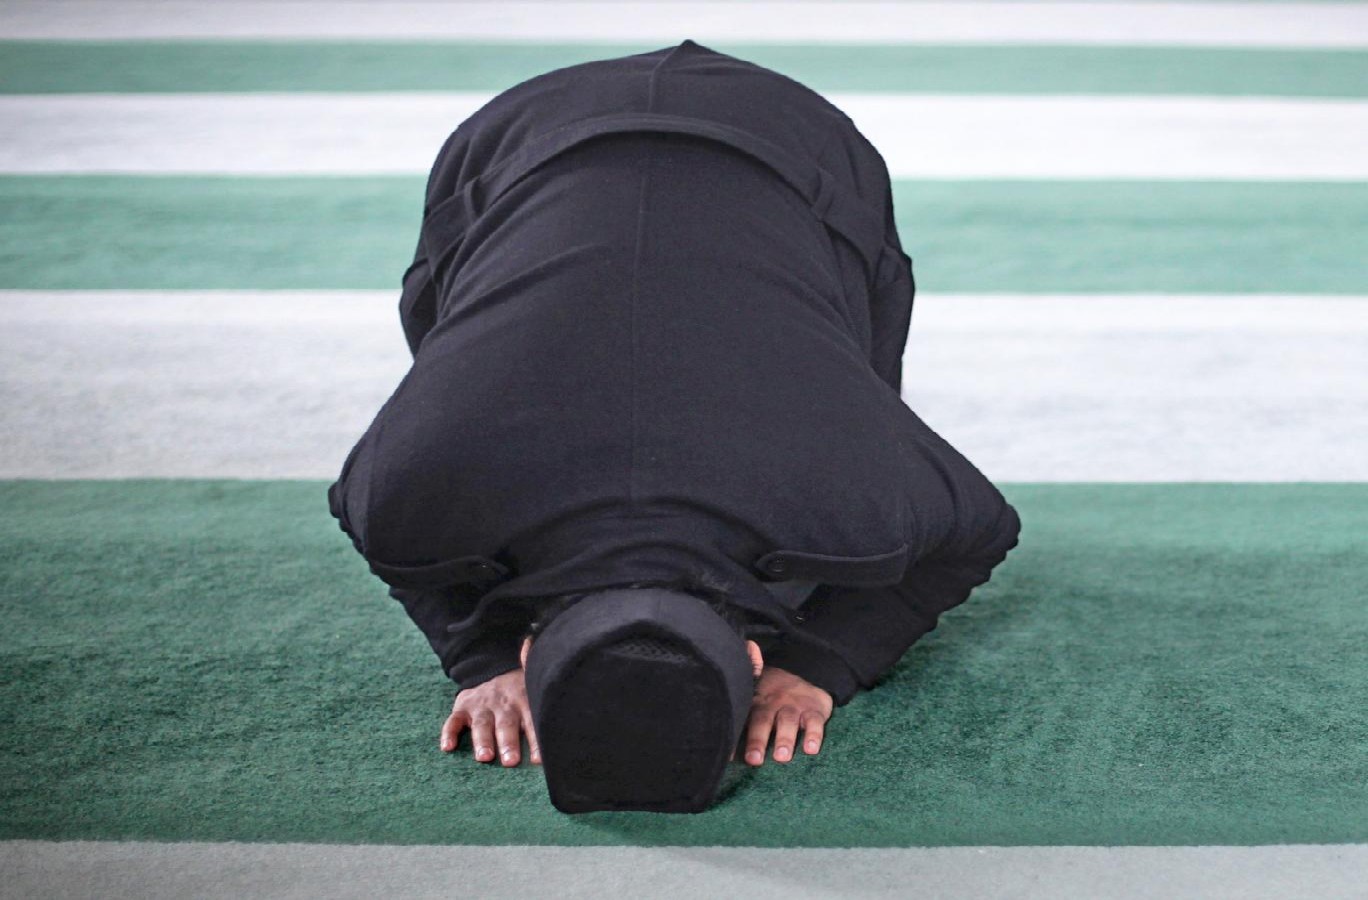 الآداب المعنوية للصلاة: في آداب اللباس